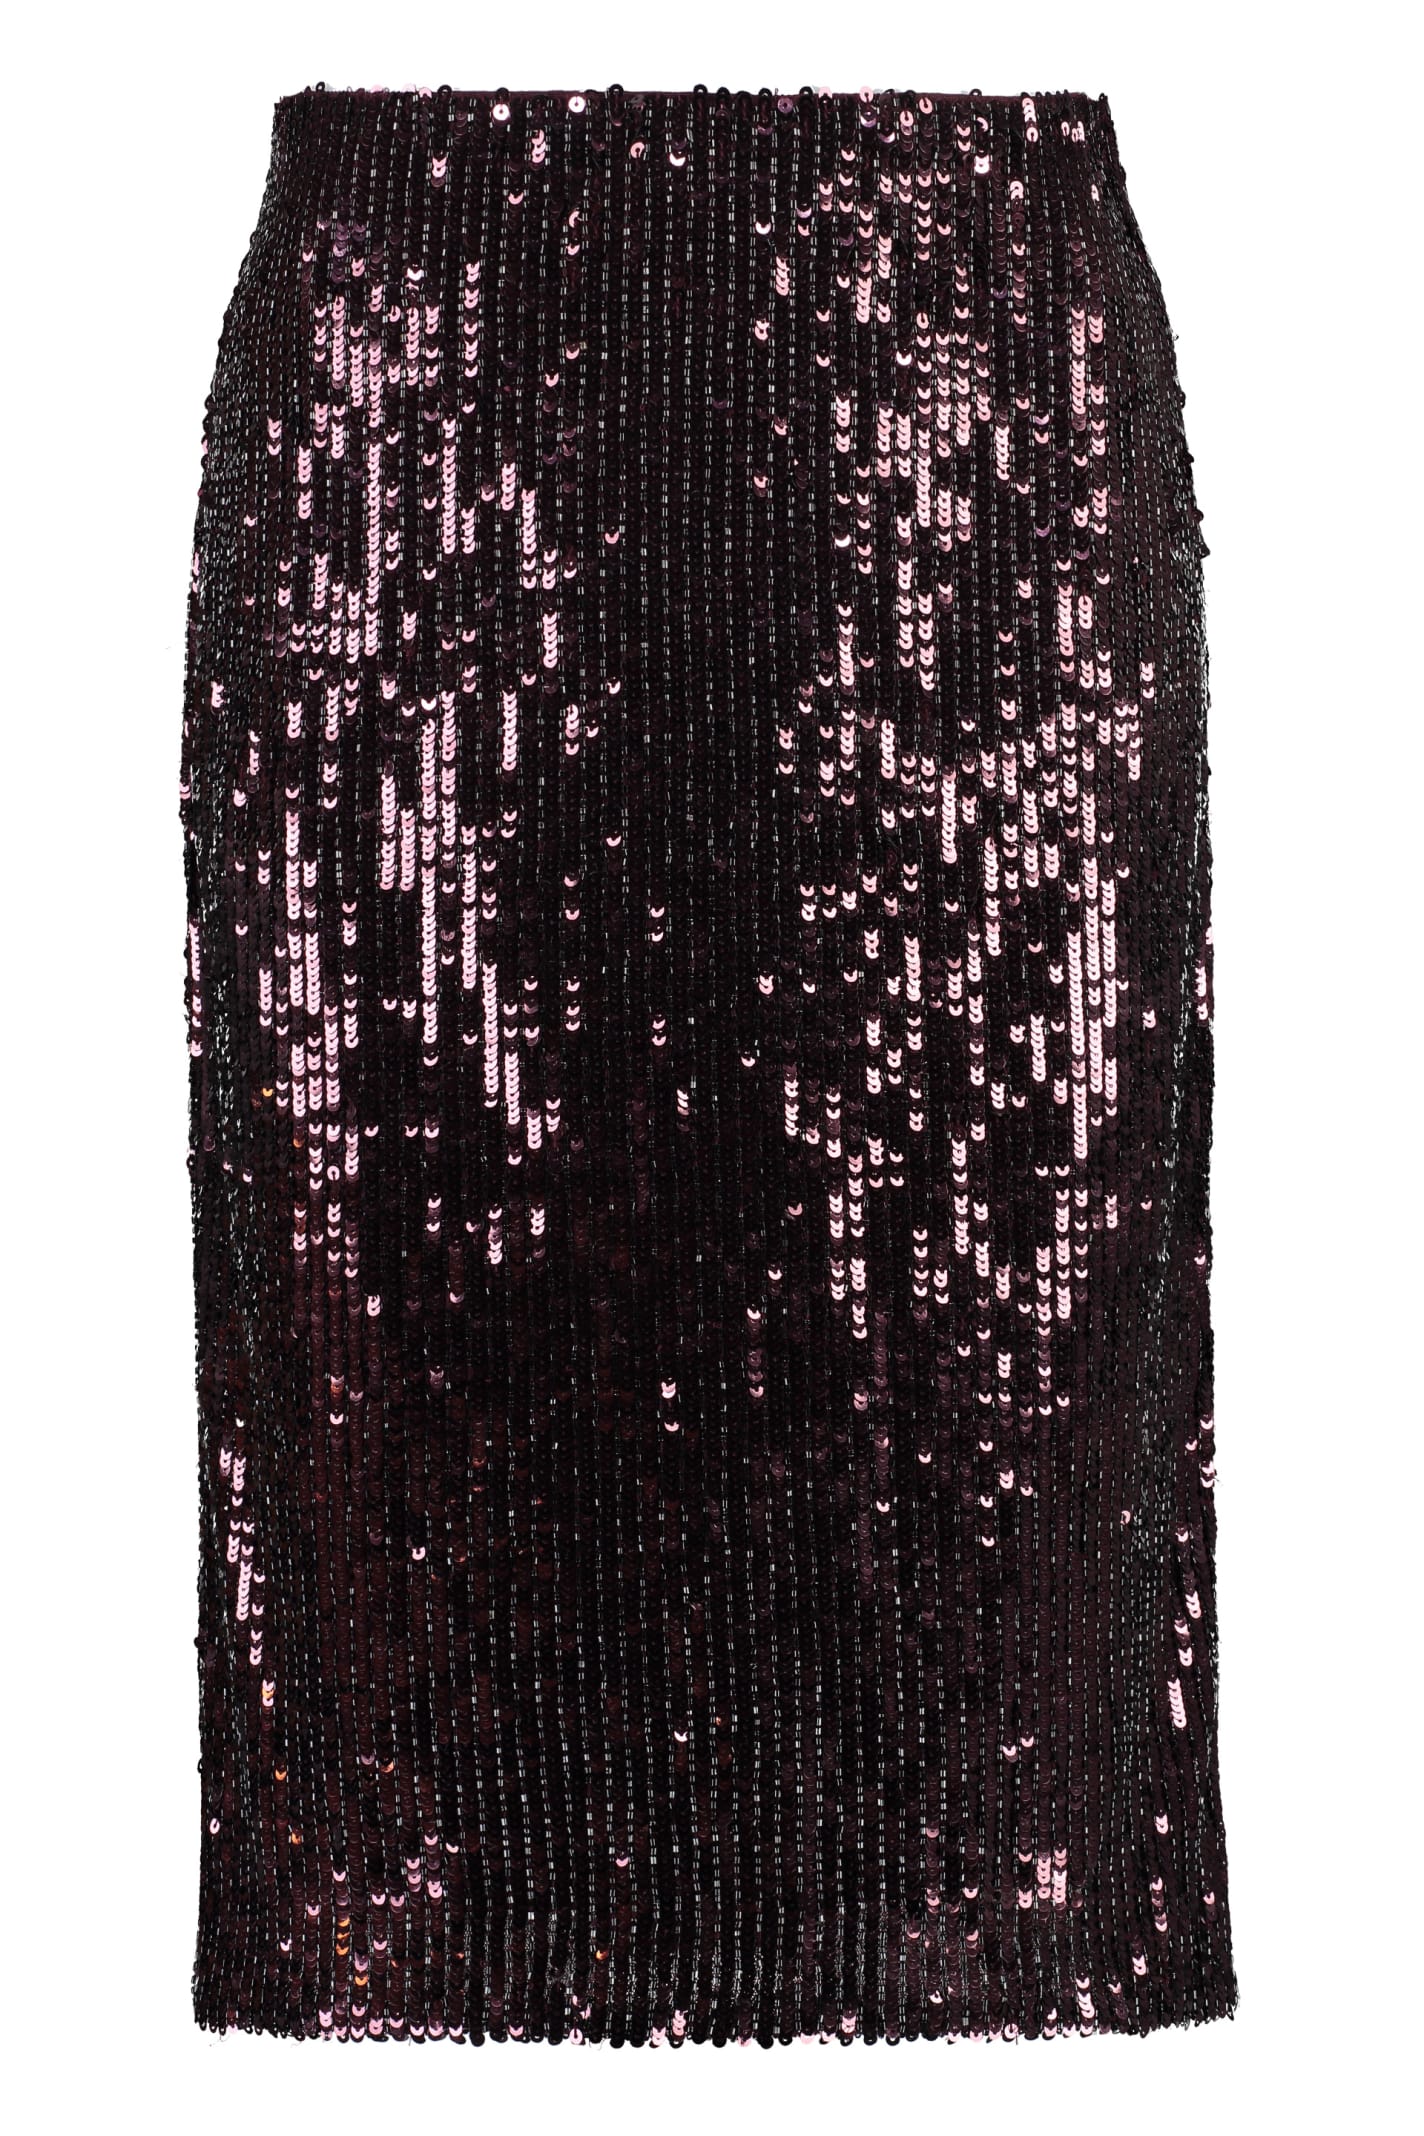 Ralph Lauren Sequin Skirt In Burgundy